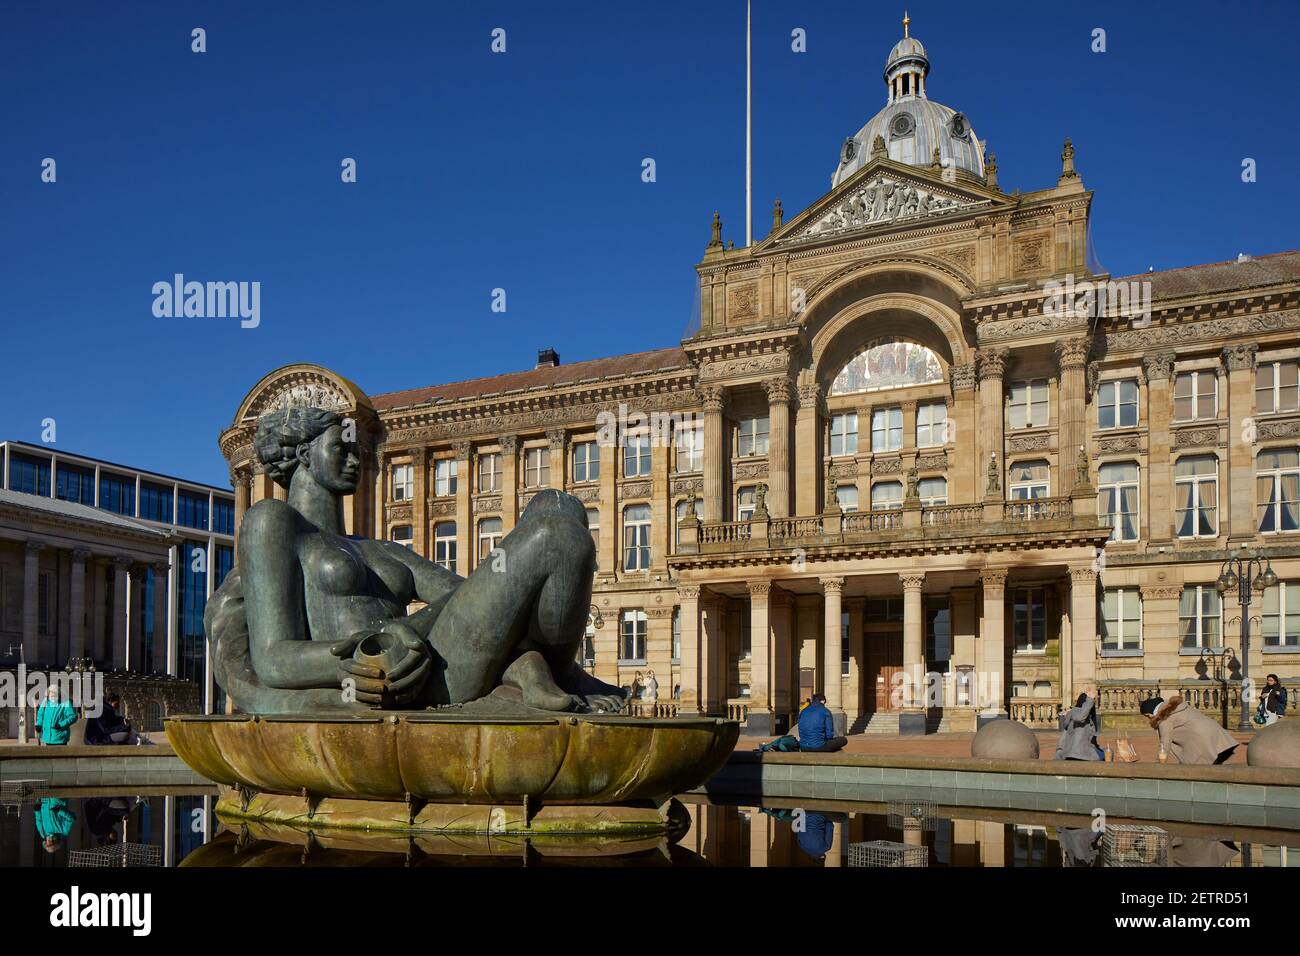 Punto di riferimento del centro di Birmingham, classificato come Council House, Victoria Square e il fiume, meglio conosciuto come The Floozie nella Jacuzzi Foto Stock